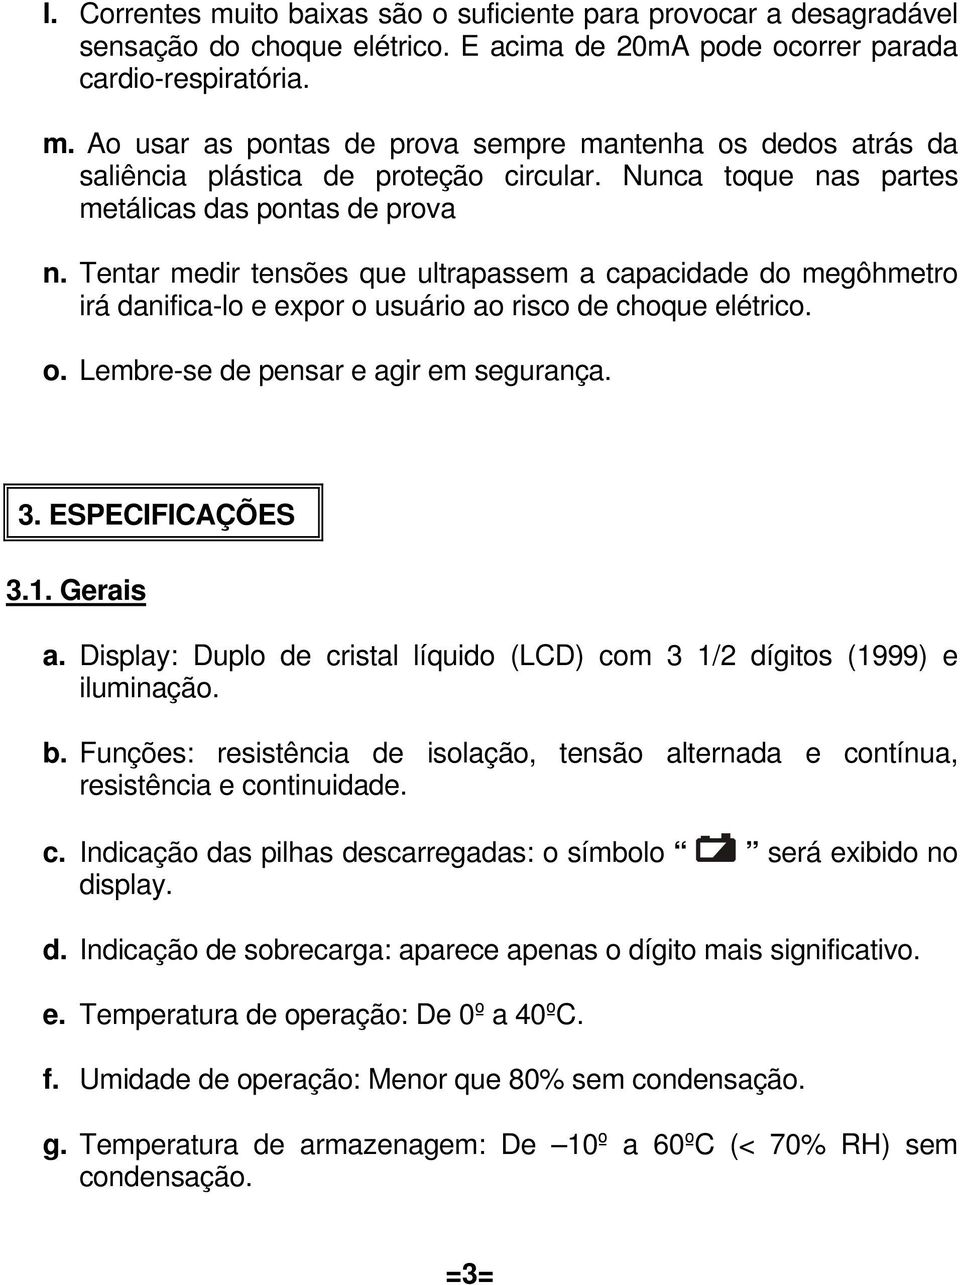 3. ESPECIFICAÇÕES 3.1. Gerais a. Display: Duplo de cristal líquido (LCD) com 3 1/2 dígitos (1999) e iluminação. b.